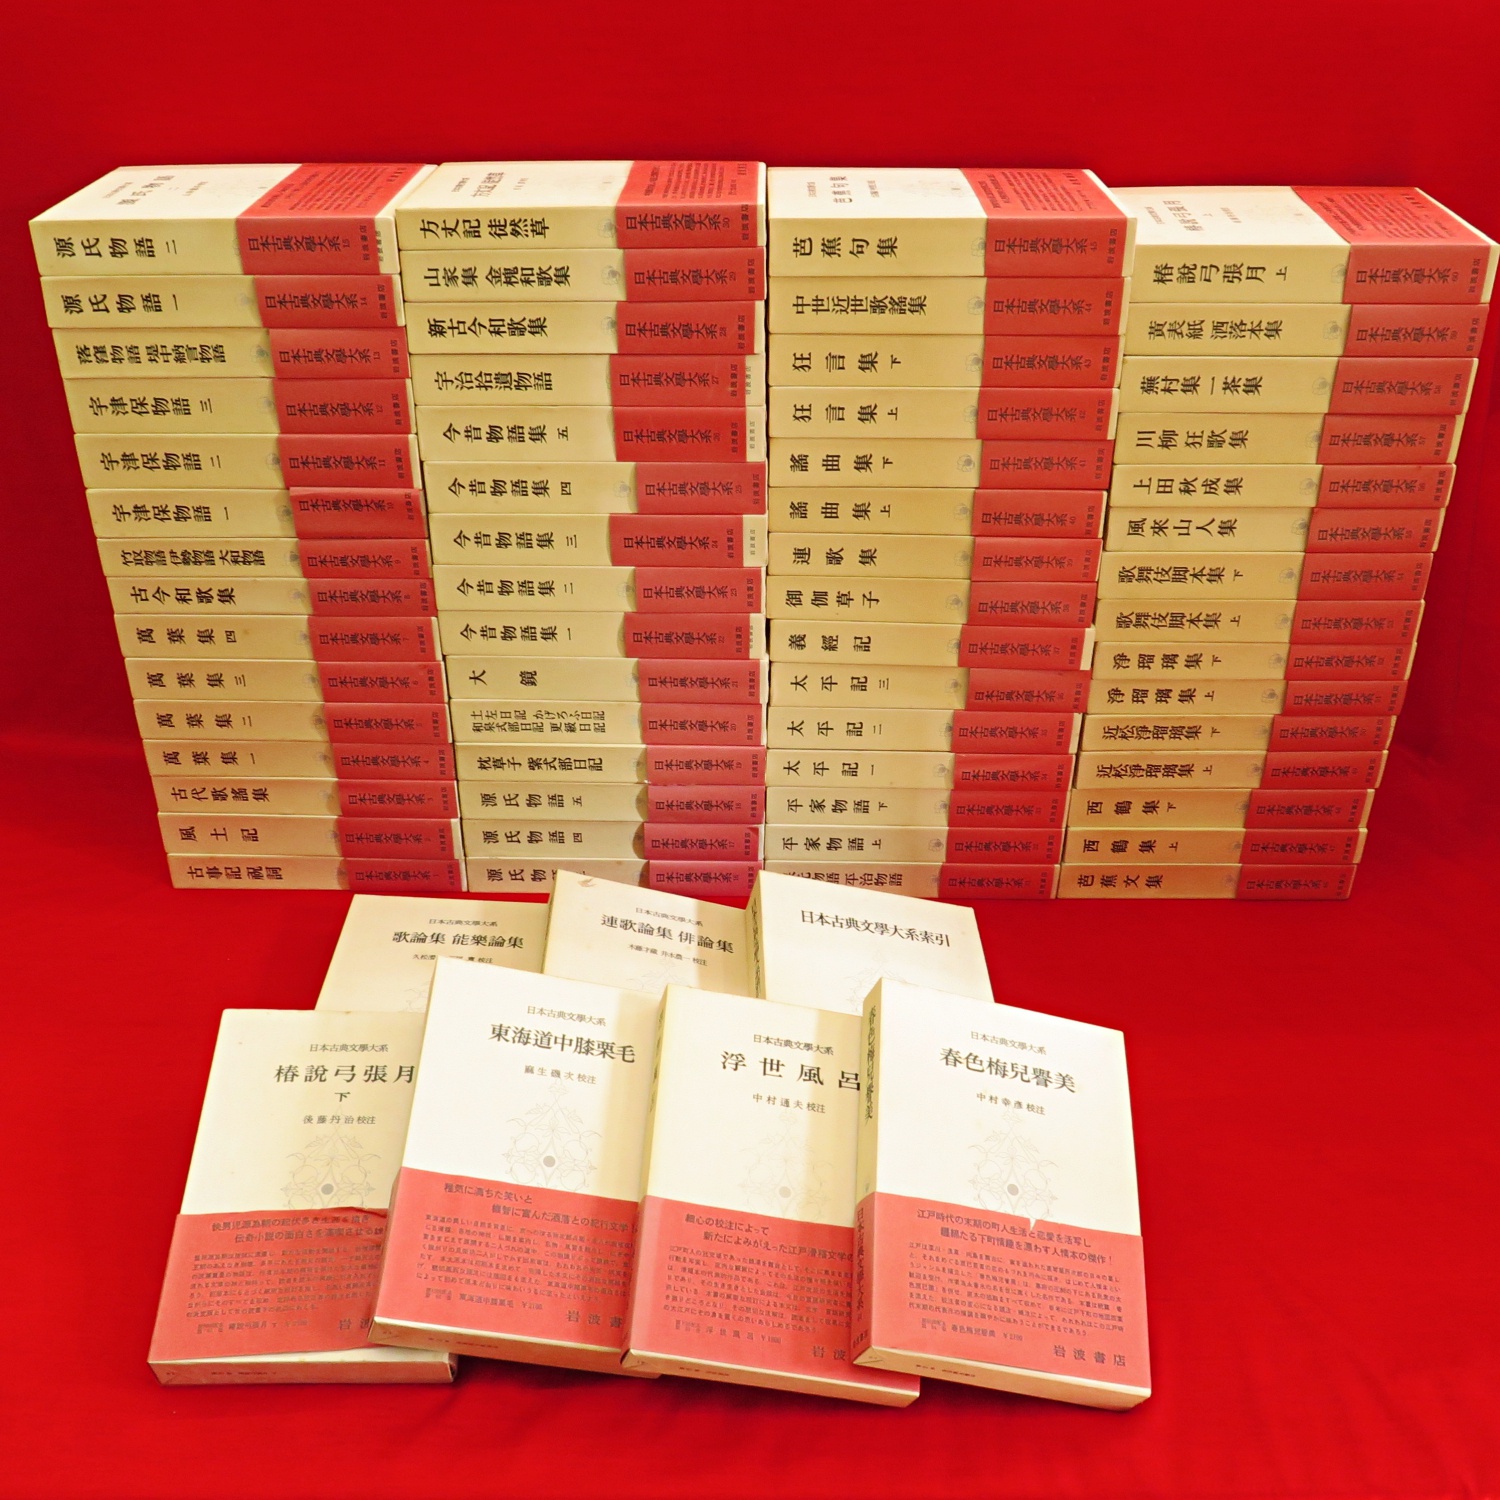 日本古典文学大系 第1期索引付き 全67冊』など、有朋堂文庫、中国文学 